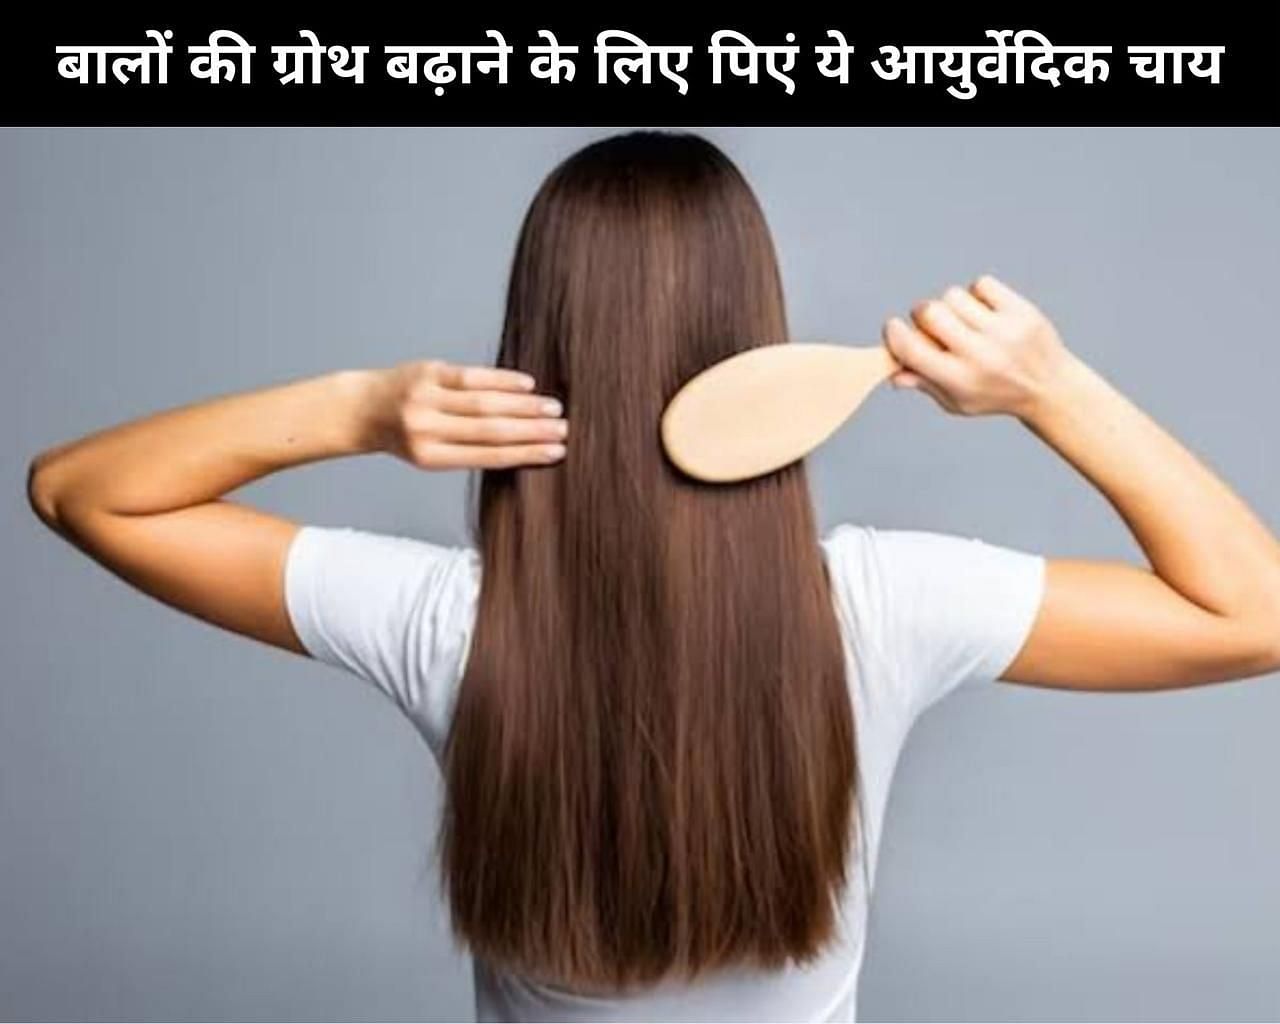 बालों की ग्रोथ बढ़ाने के लिए पिएं ये आयुर्वेदिक चाय (sportskeeda Hindi) 